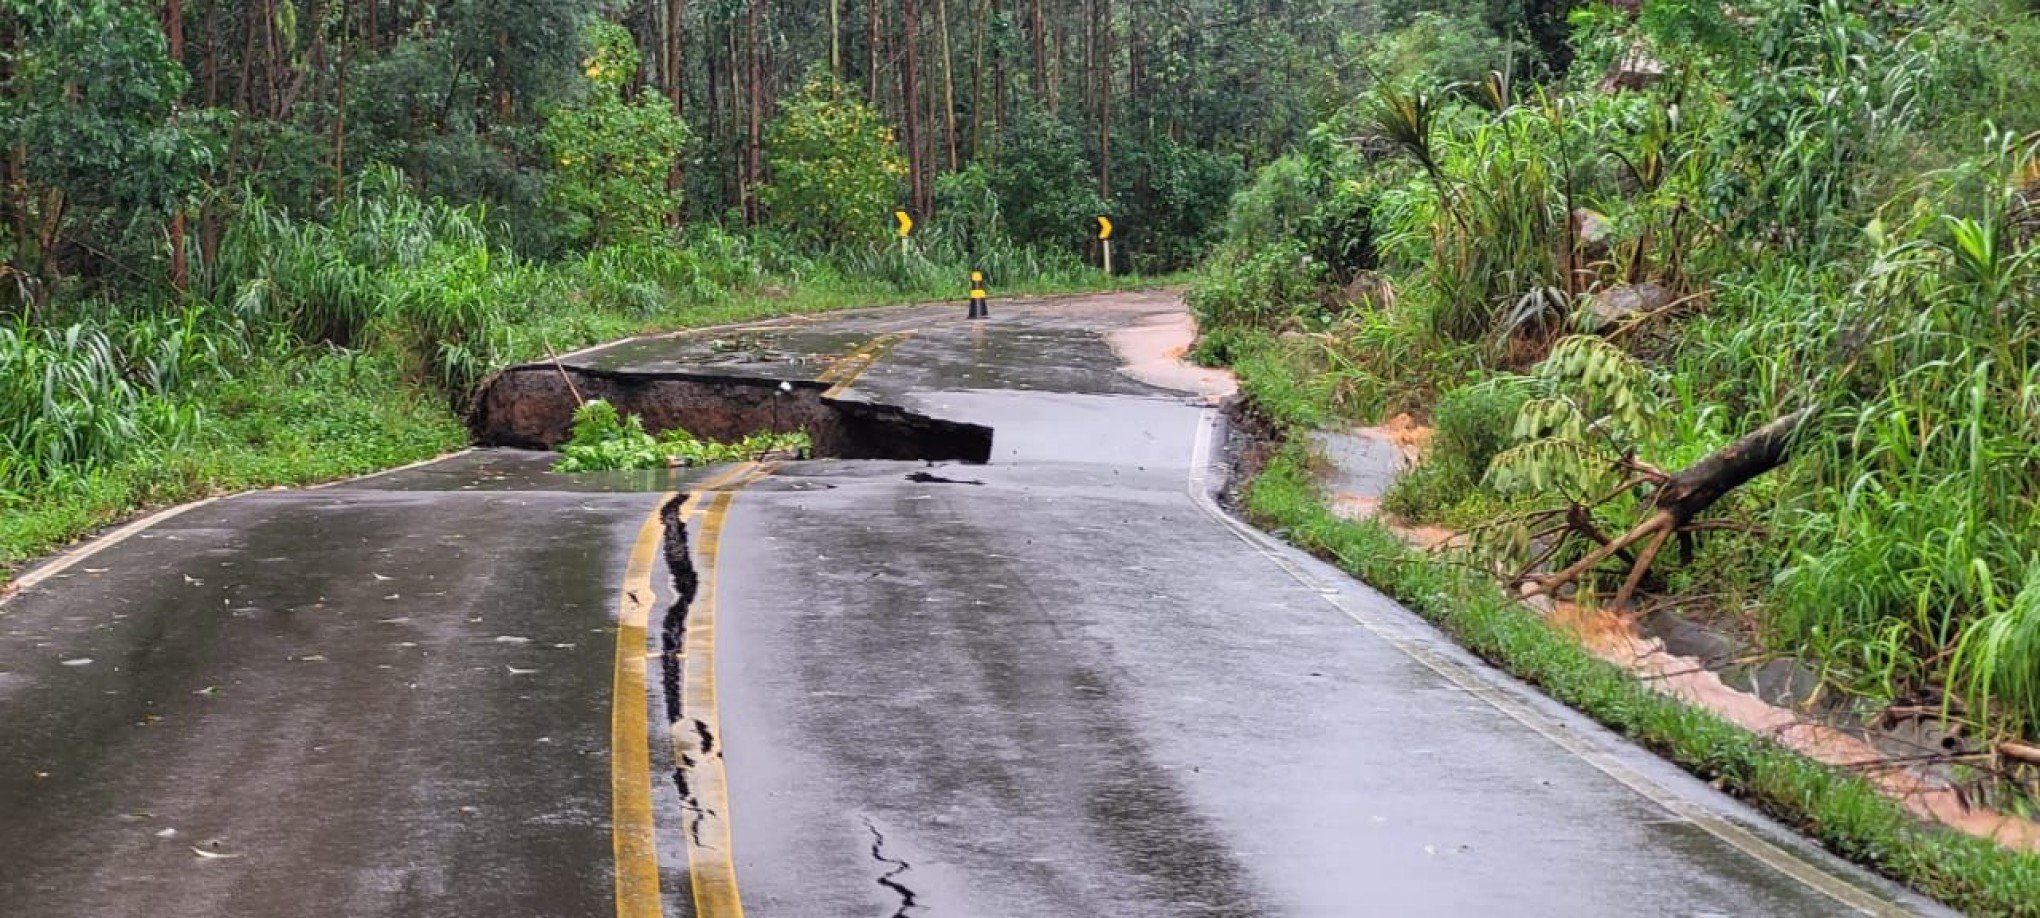 CATÁSTROFE NO RS: Crateras se abrem em estrada da região horas depois de primeiras rachaduras surgirem